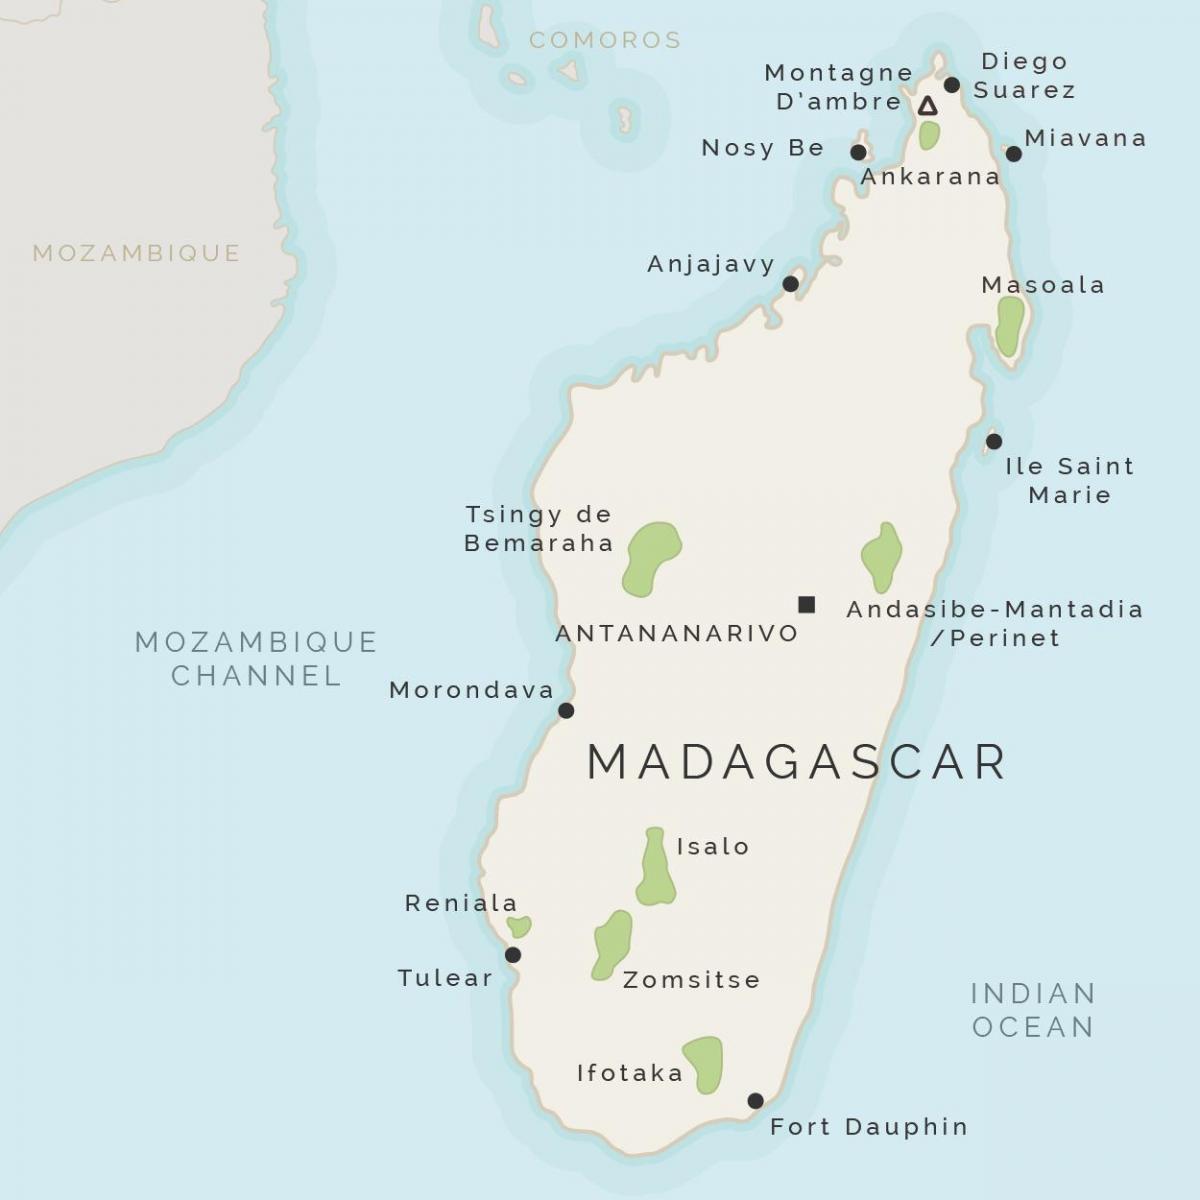 mappa del Madagascar e le isole circostanti